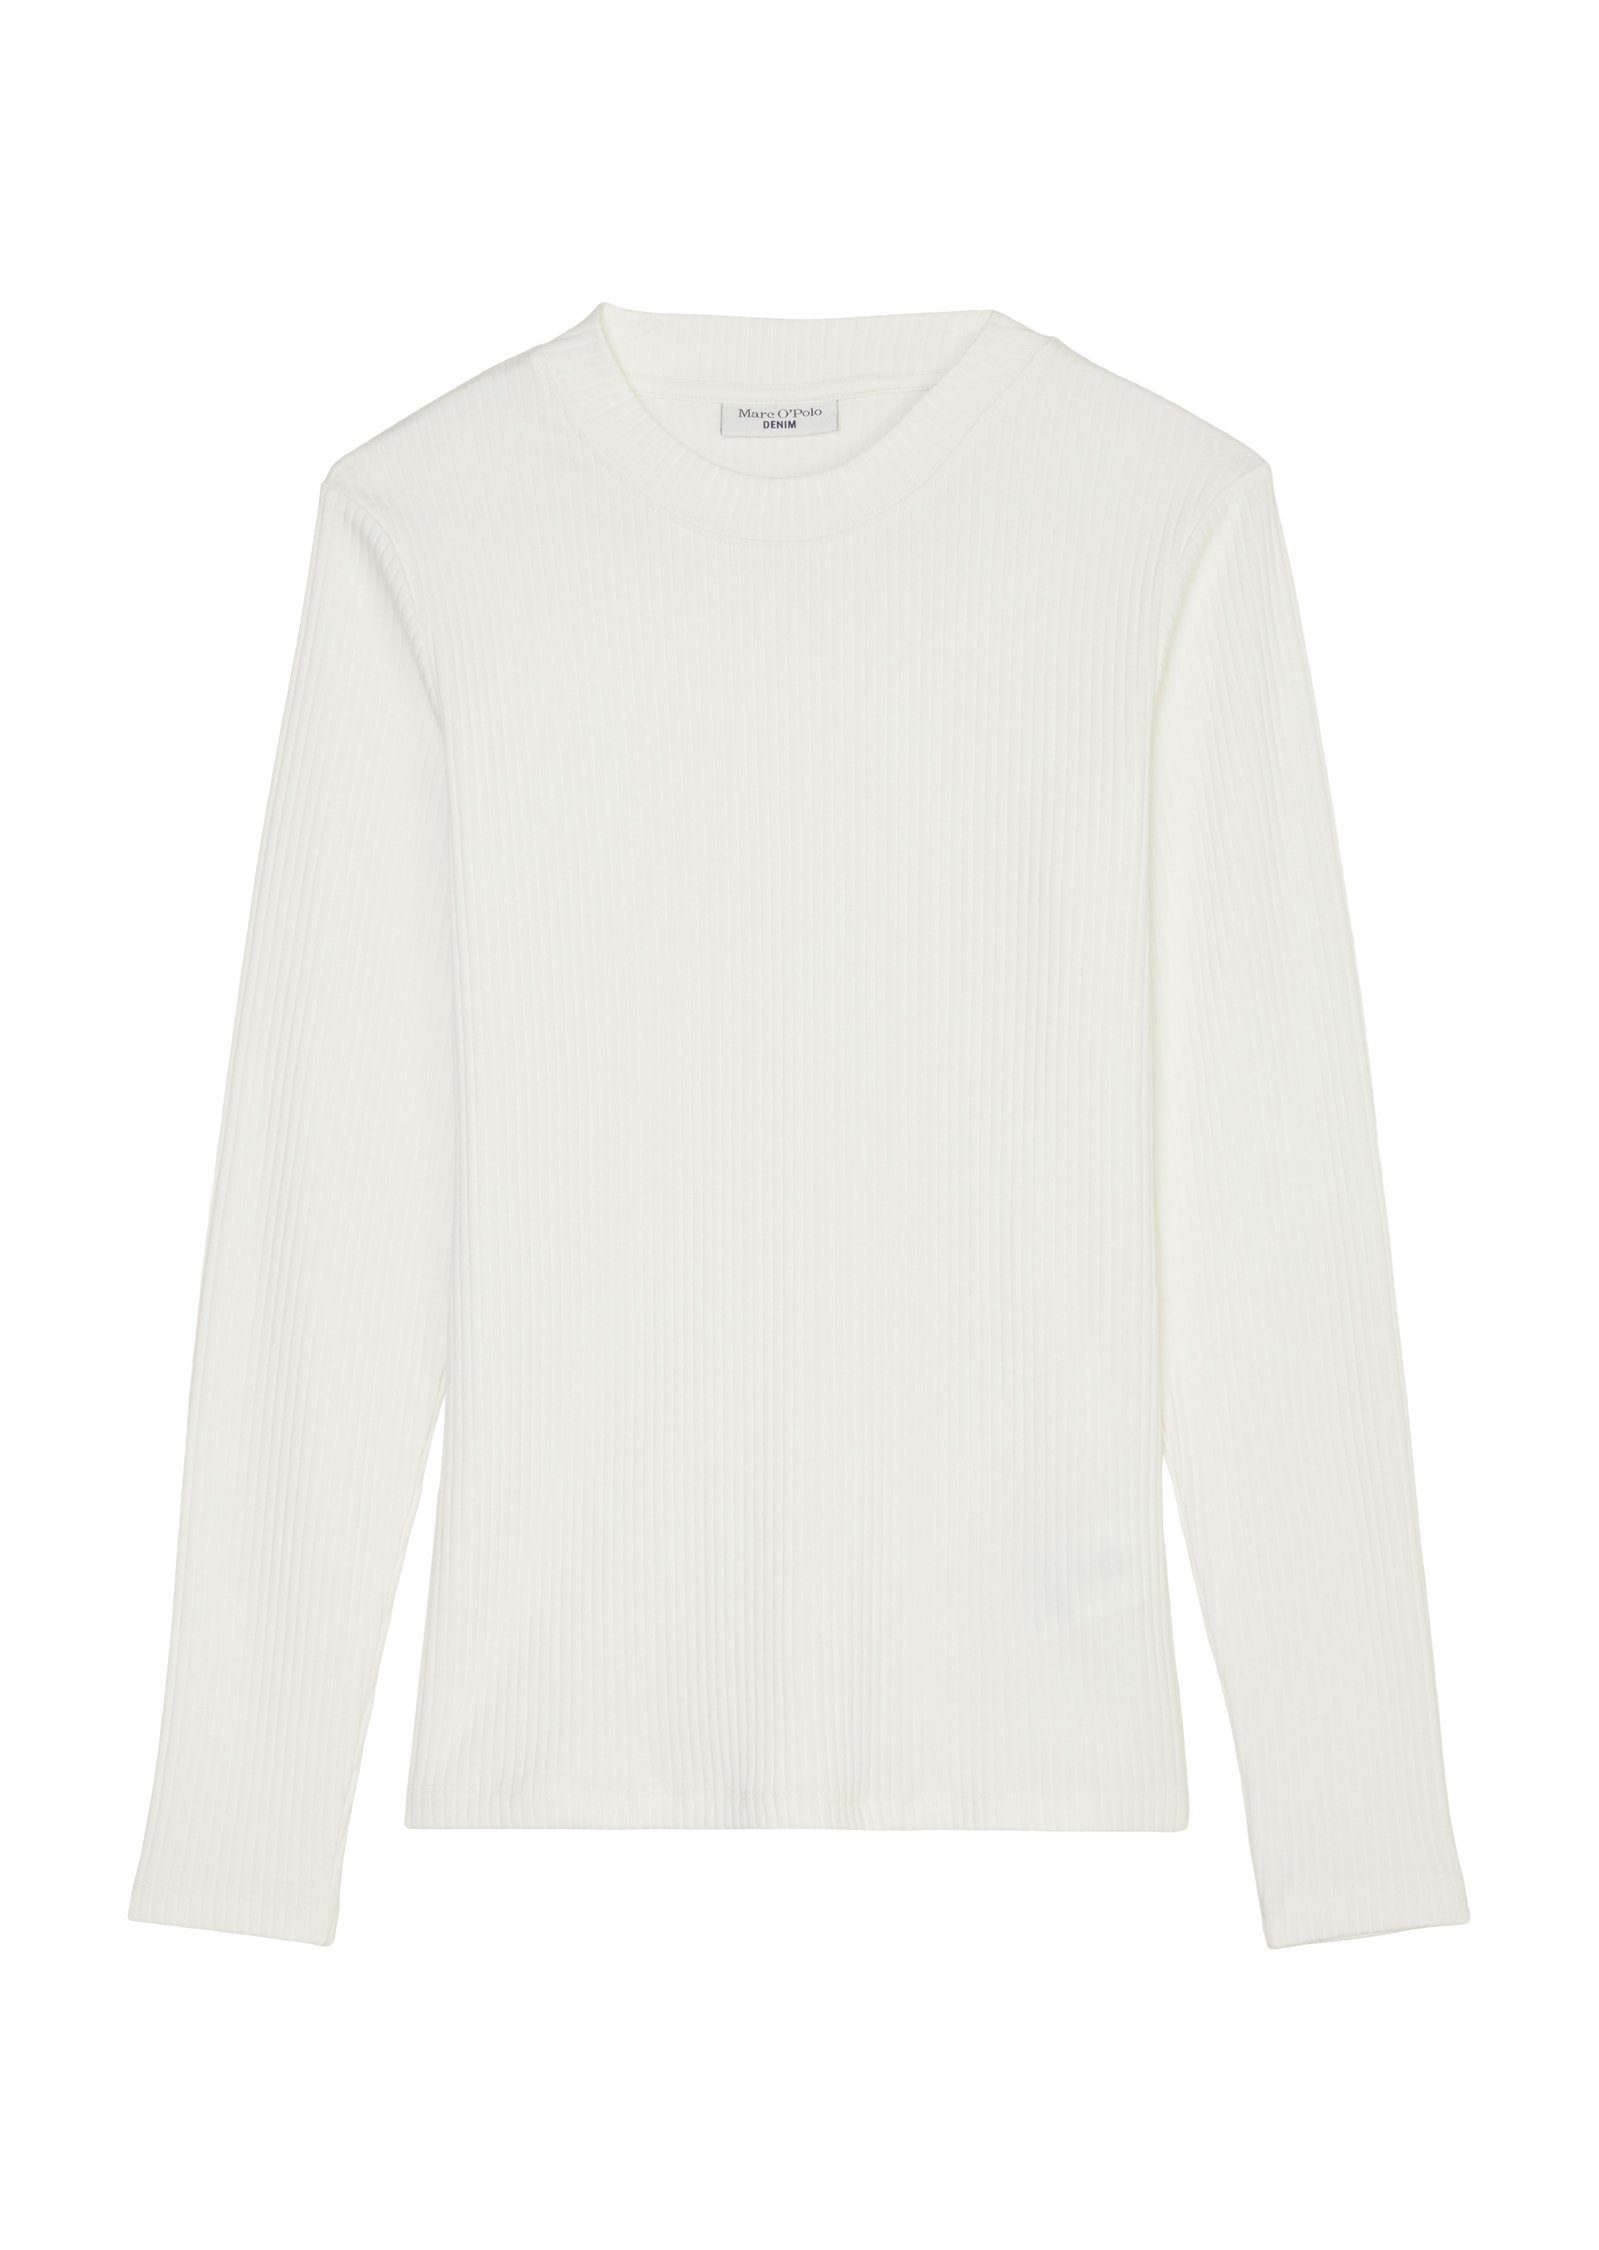 Marc O'Polo DENIM Langarmshirt in elastischer Qualität egg white | Rundhalsshirts